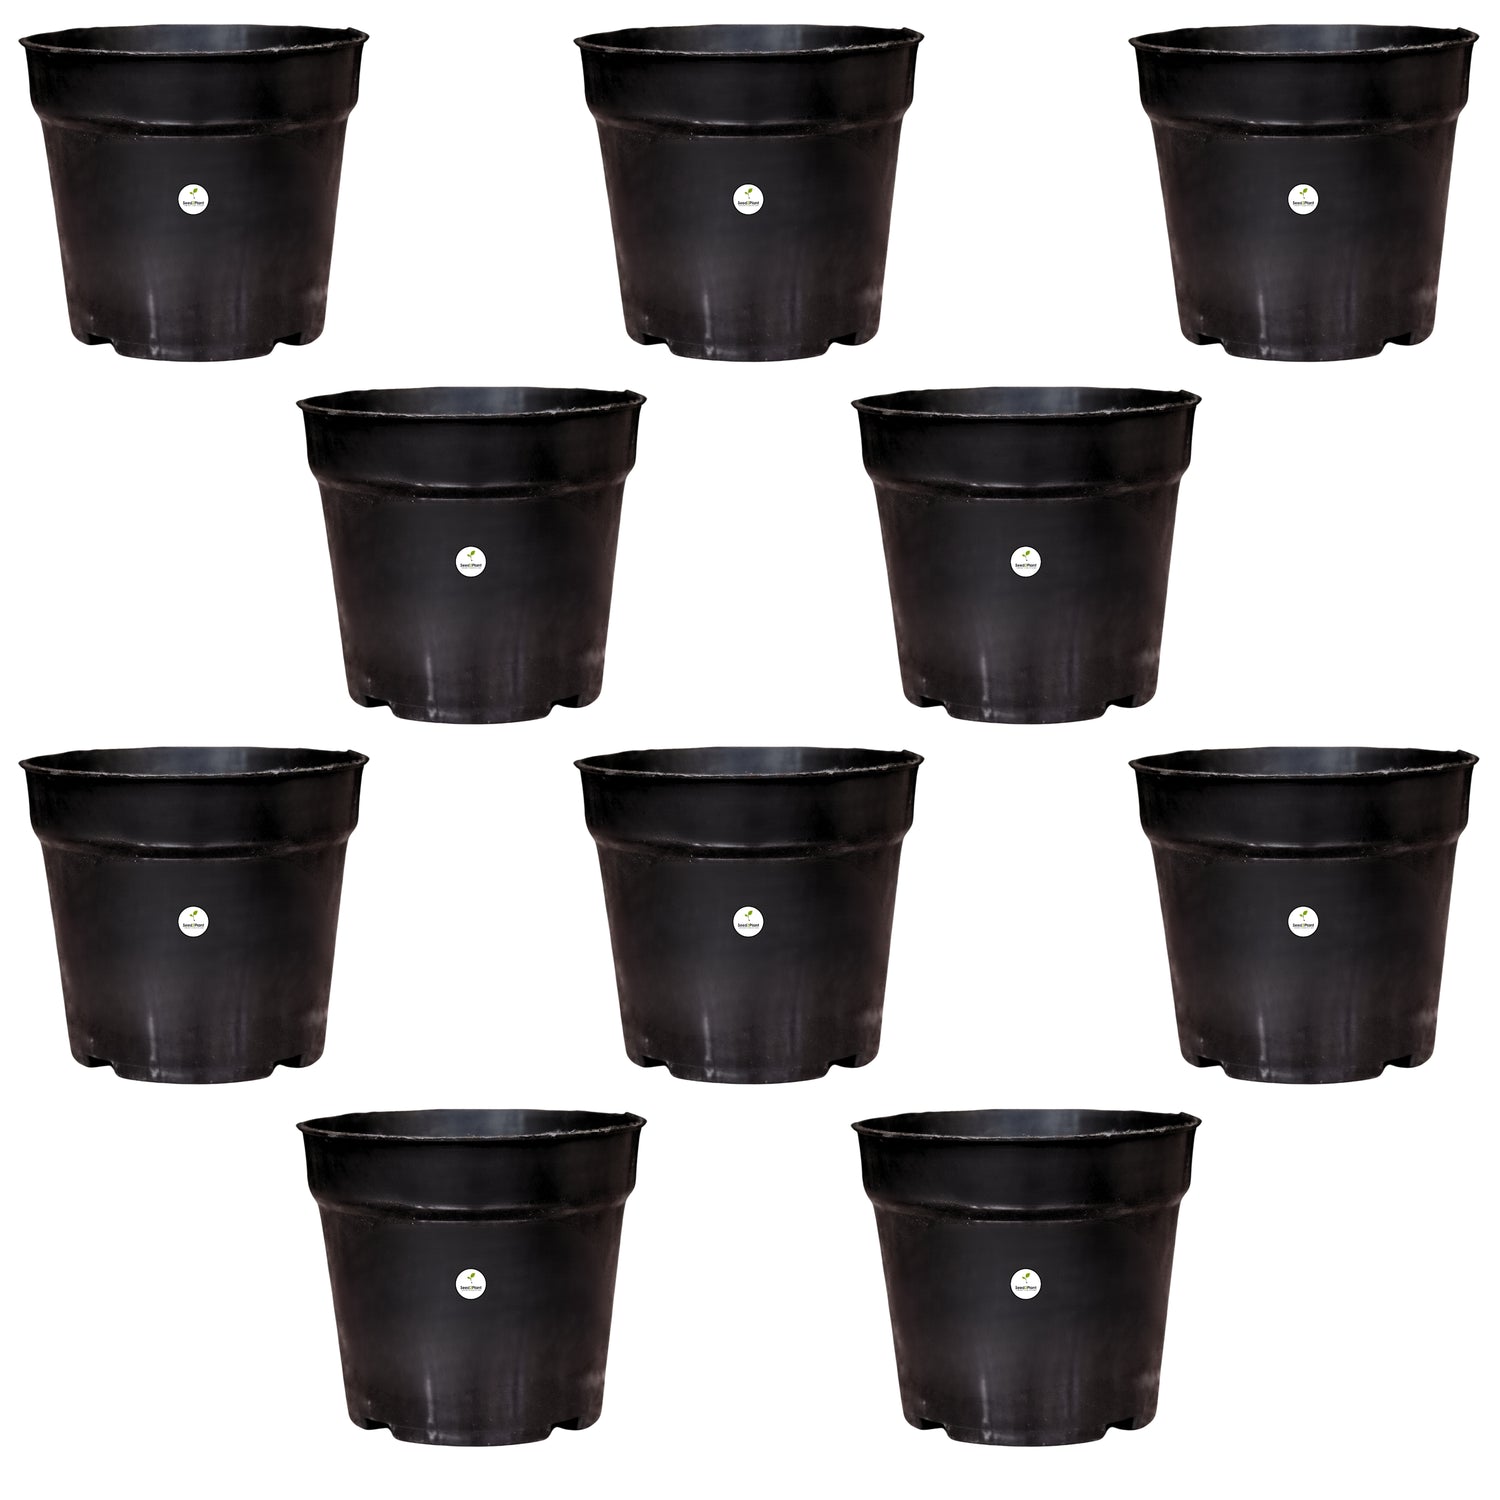 Plastic Nursery Pot / Planter - Black Colour